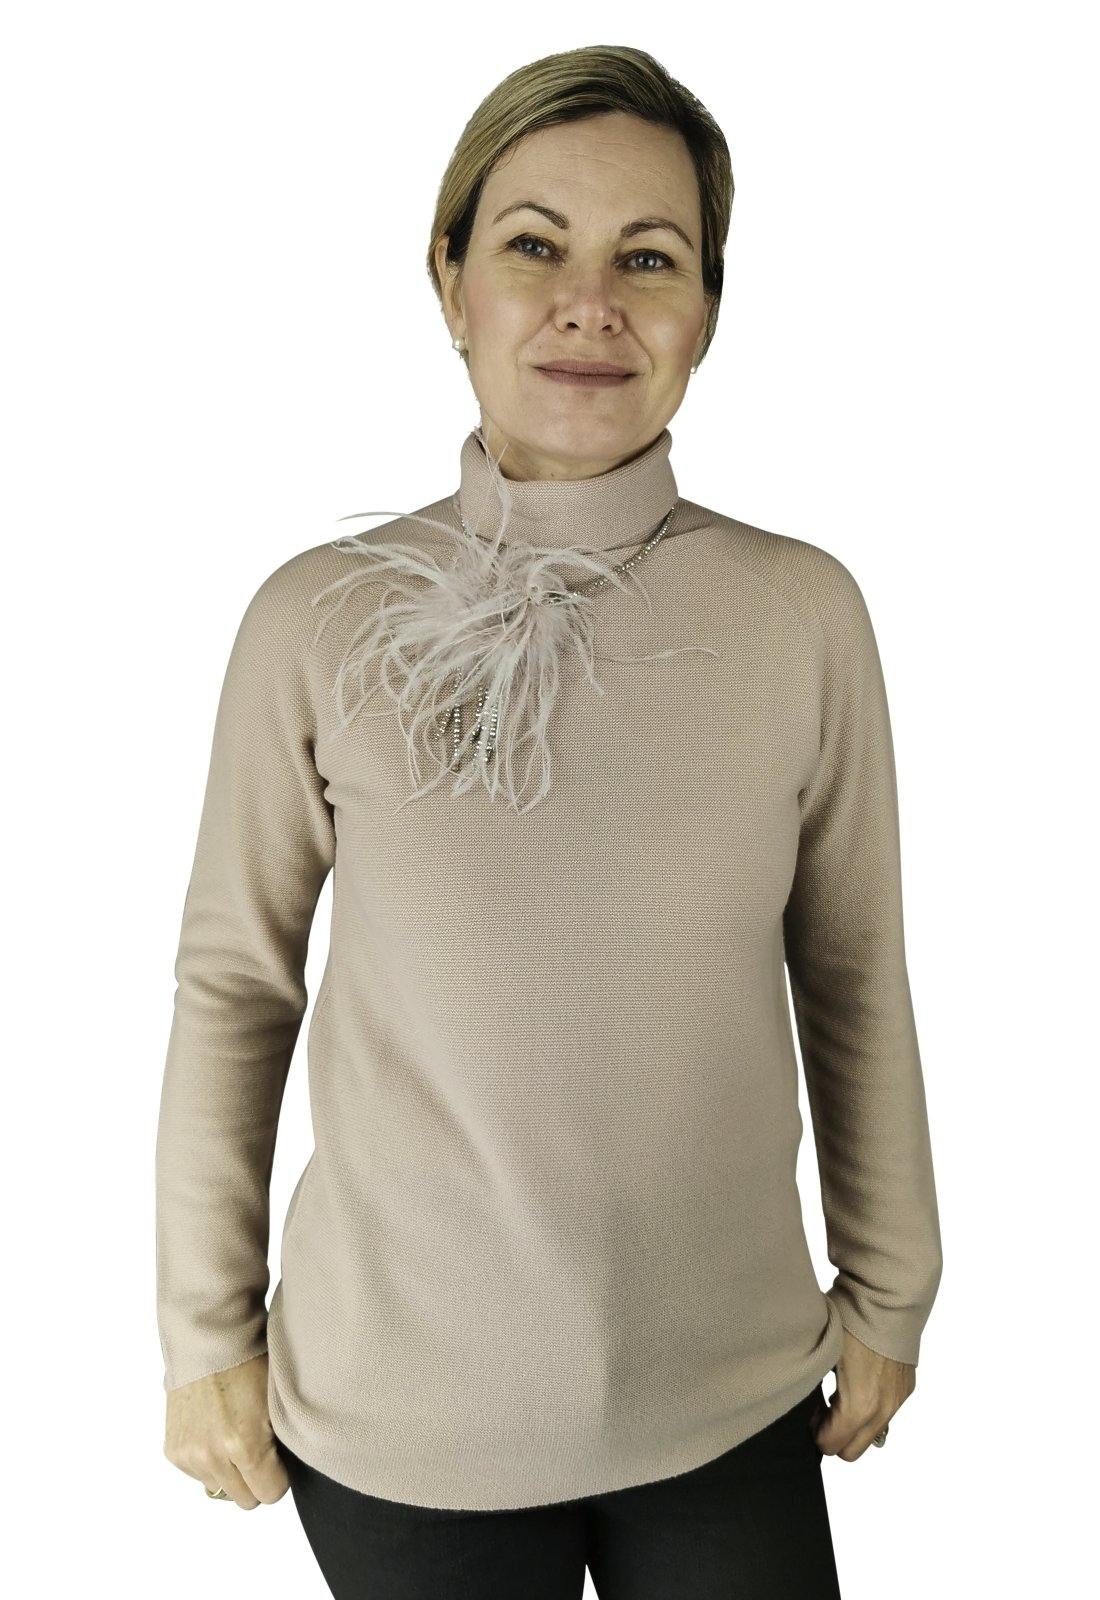 Exklusive Damen Halskette mit aufwendigem Verschluß - C. Strauch Mode 